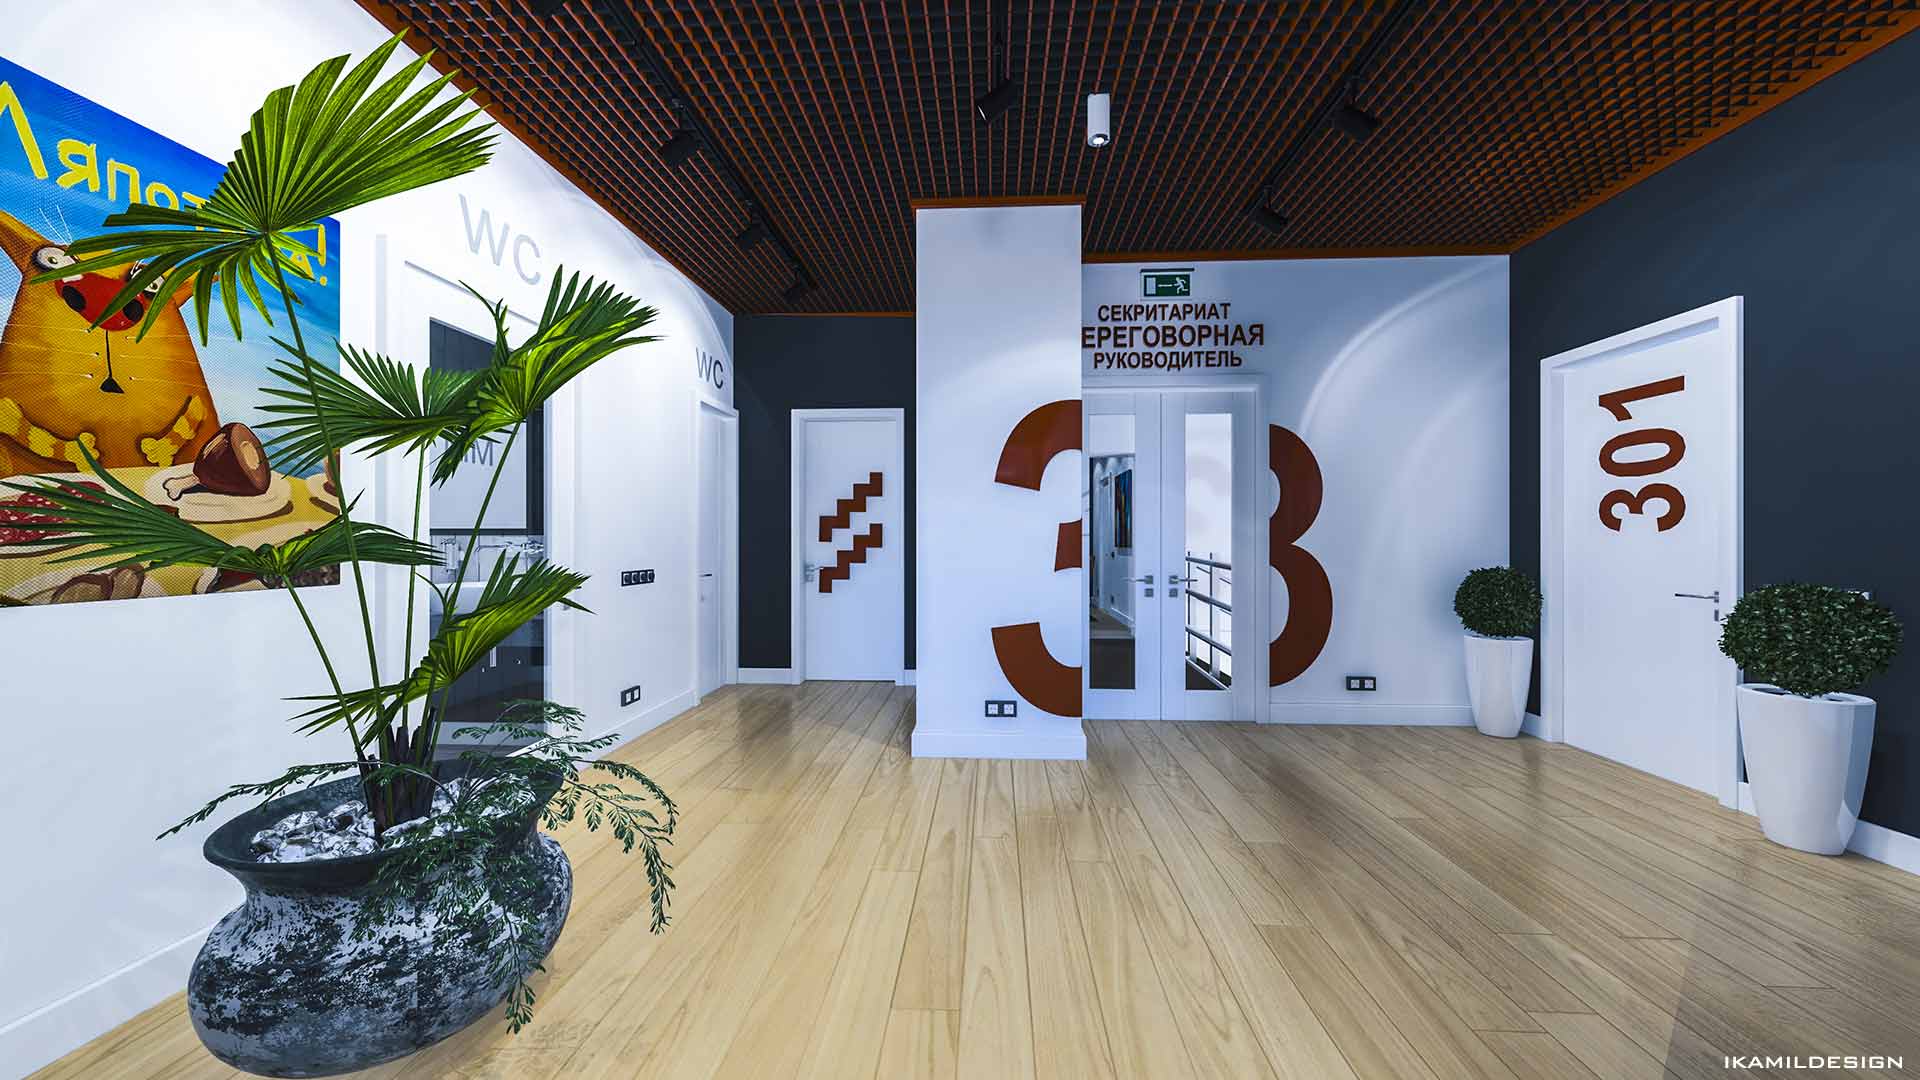 типовое решение для холлв и коридоров 3-го этажа офисов, москва, ikamildesign